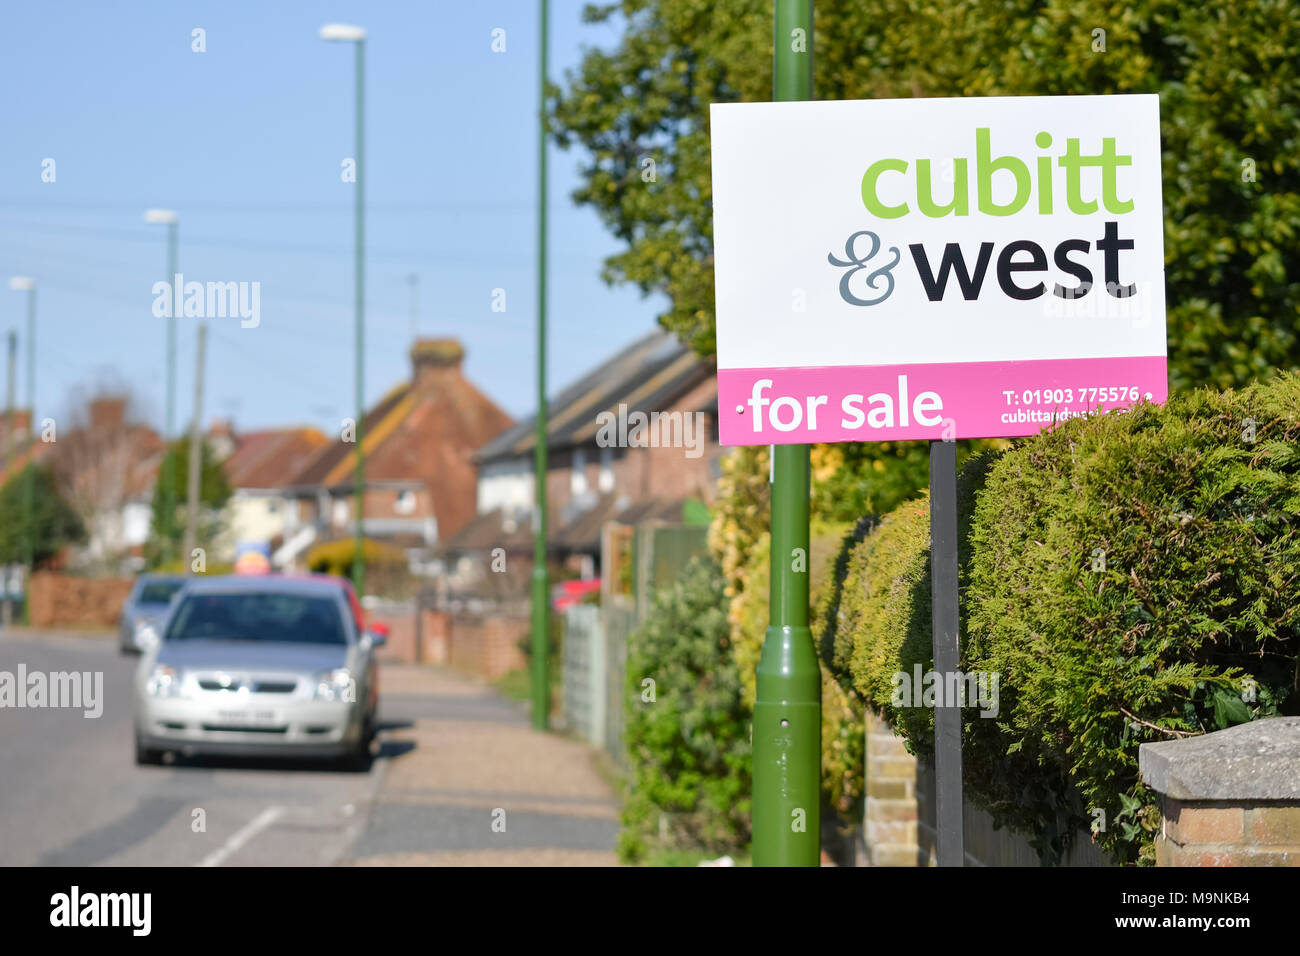 Cubitt & West Immobilienmakler Schild "Zum Verkauf" außerhalb eines Hauses in Großbritannien. Stockfoto